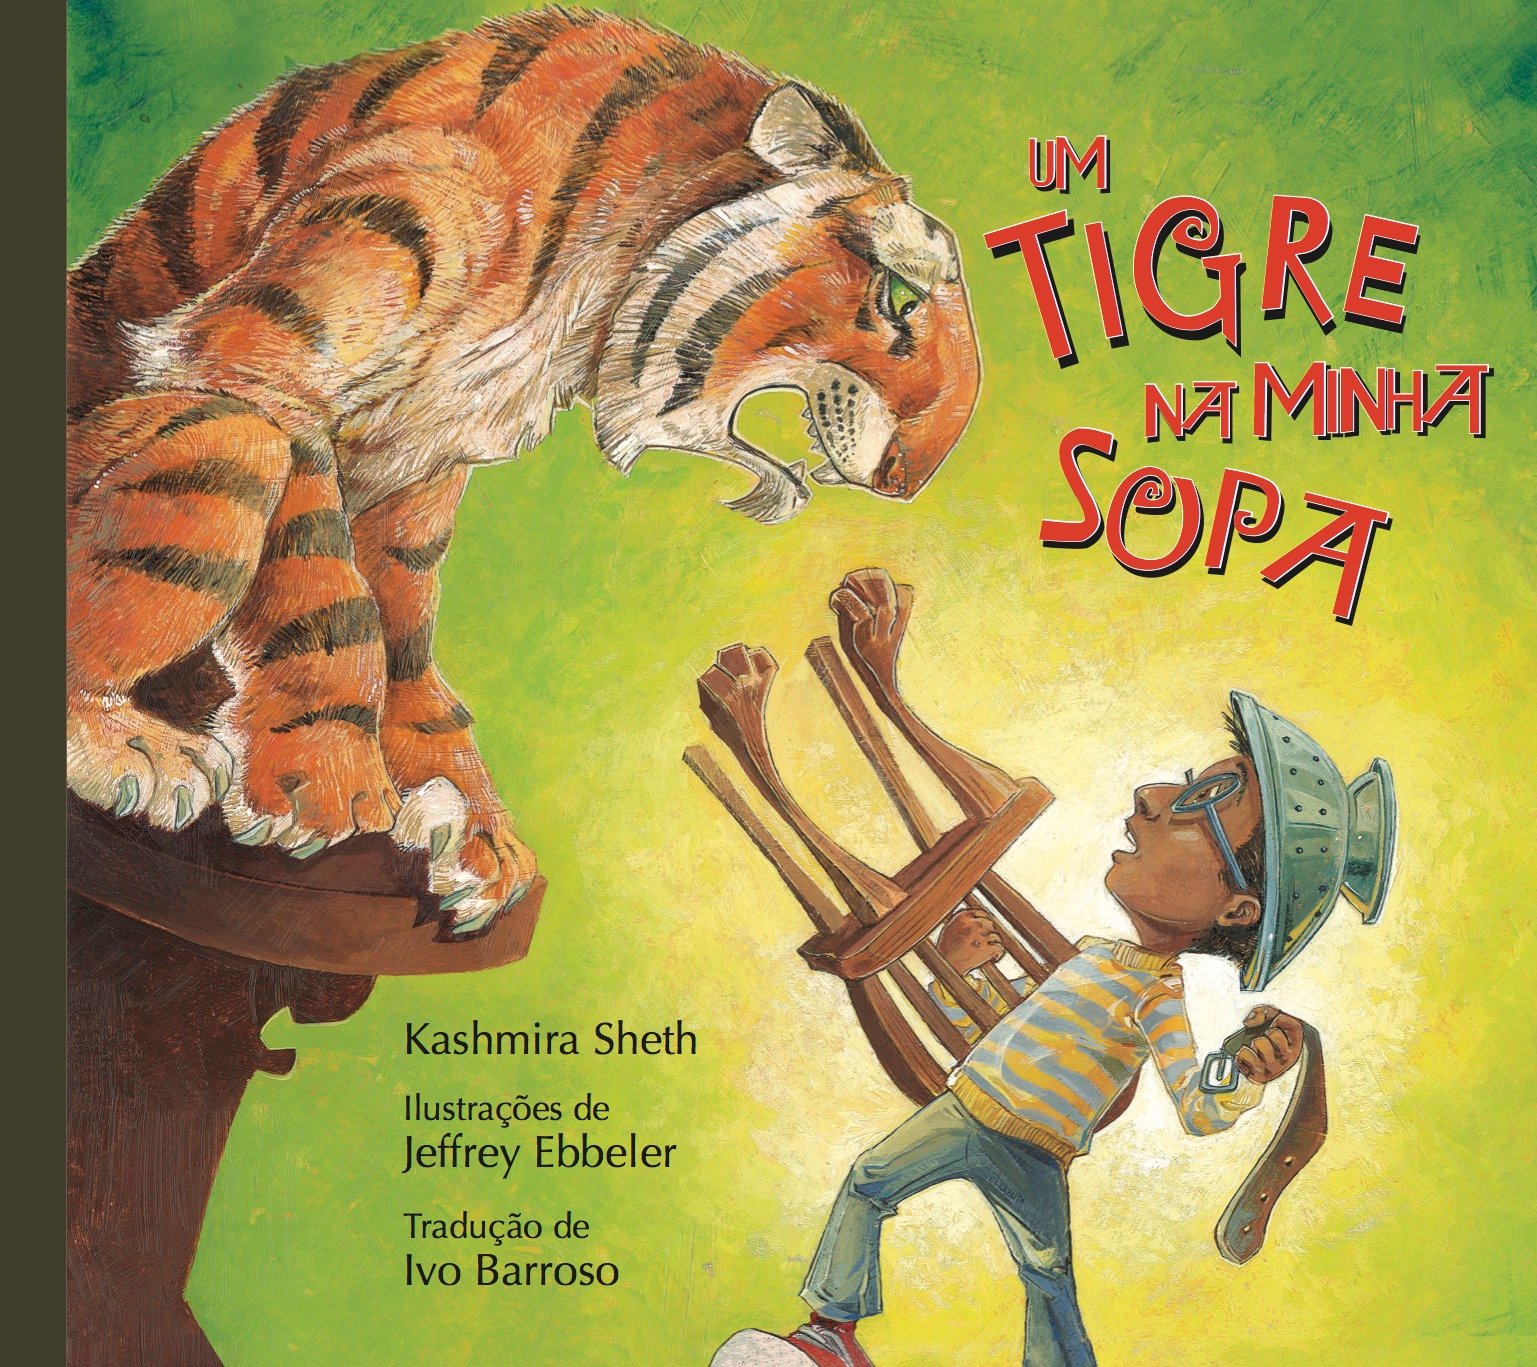 Um tigre na minha sopa, livro de Kashmira Sheth